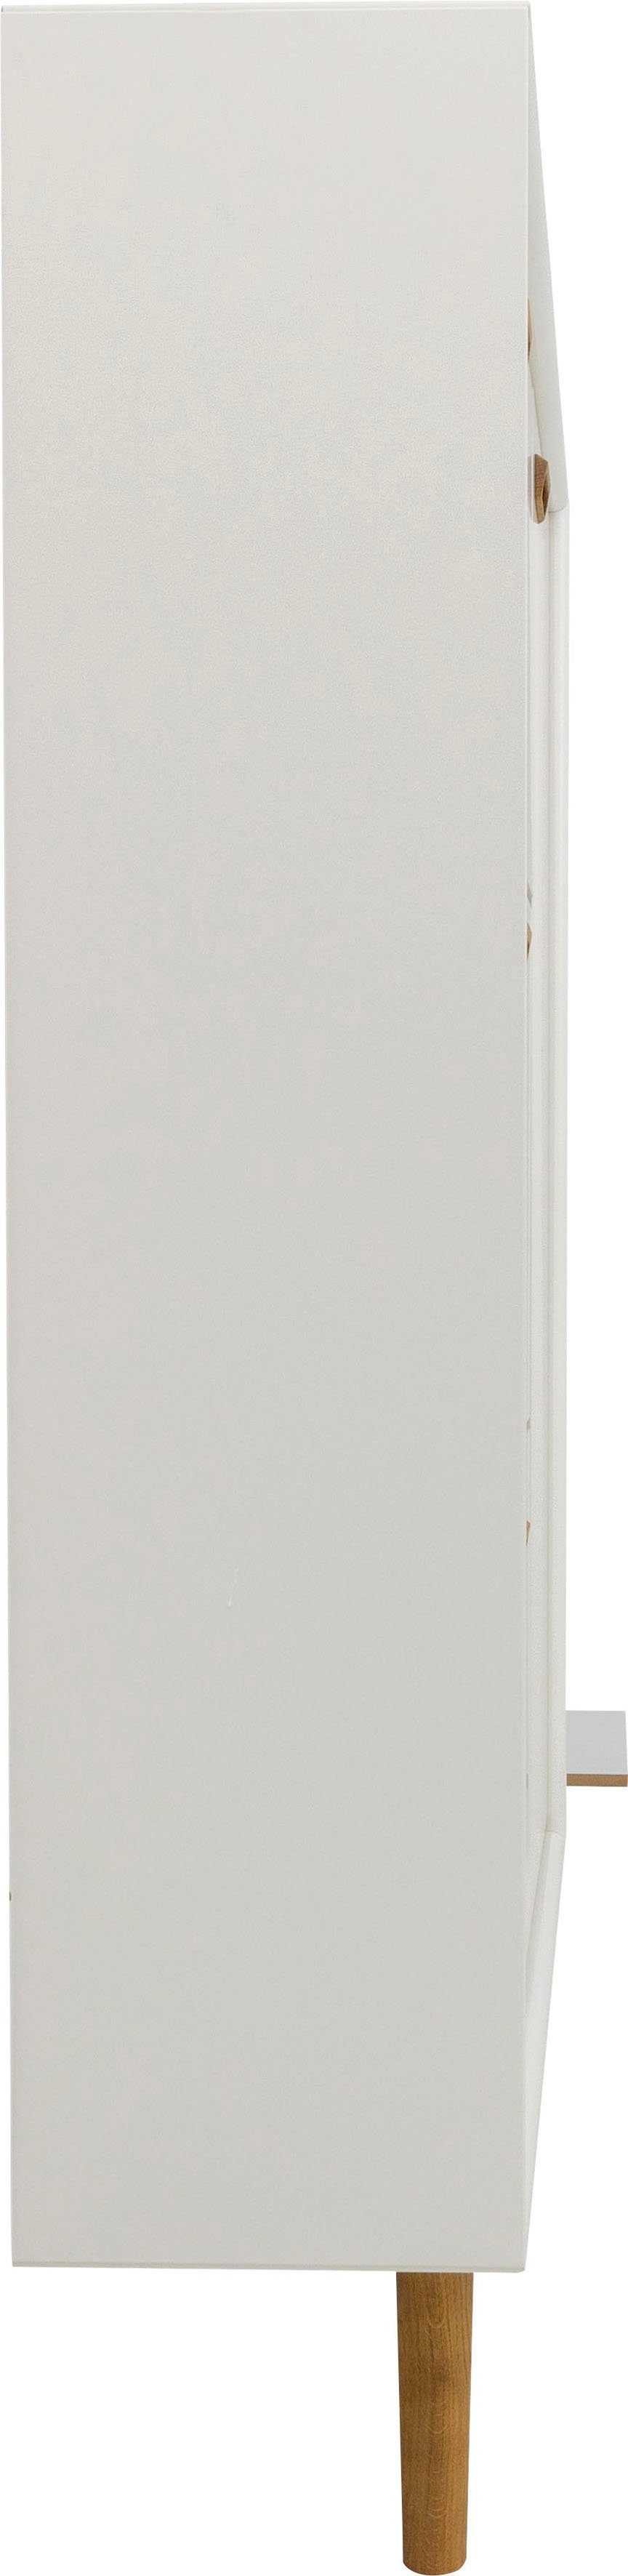 Tenzo Schuhschrank SVEA Tür mit Design Tenzo Design Klappen, von white und studio 3 1